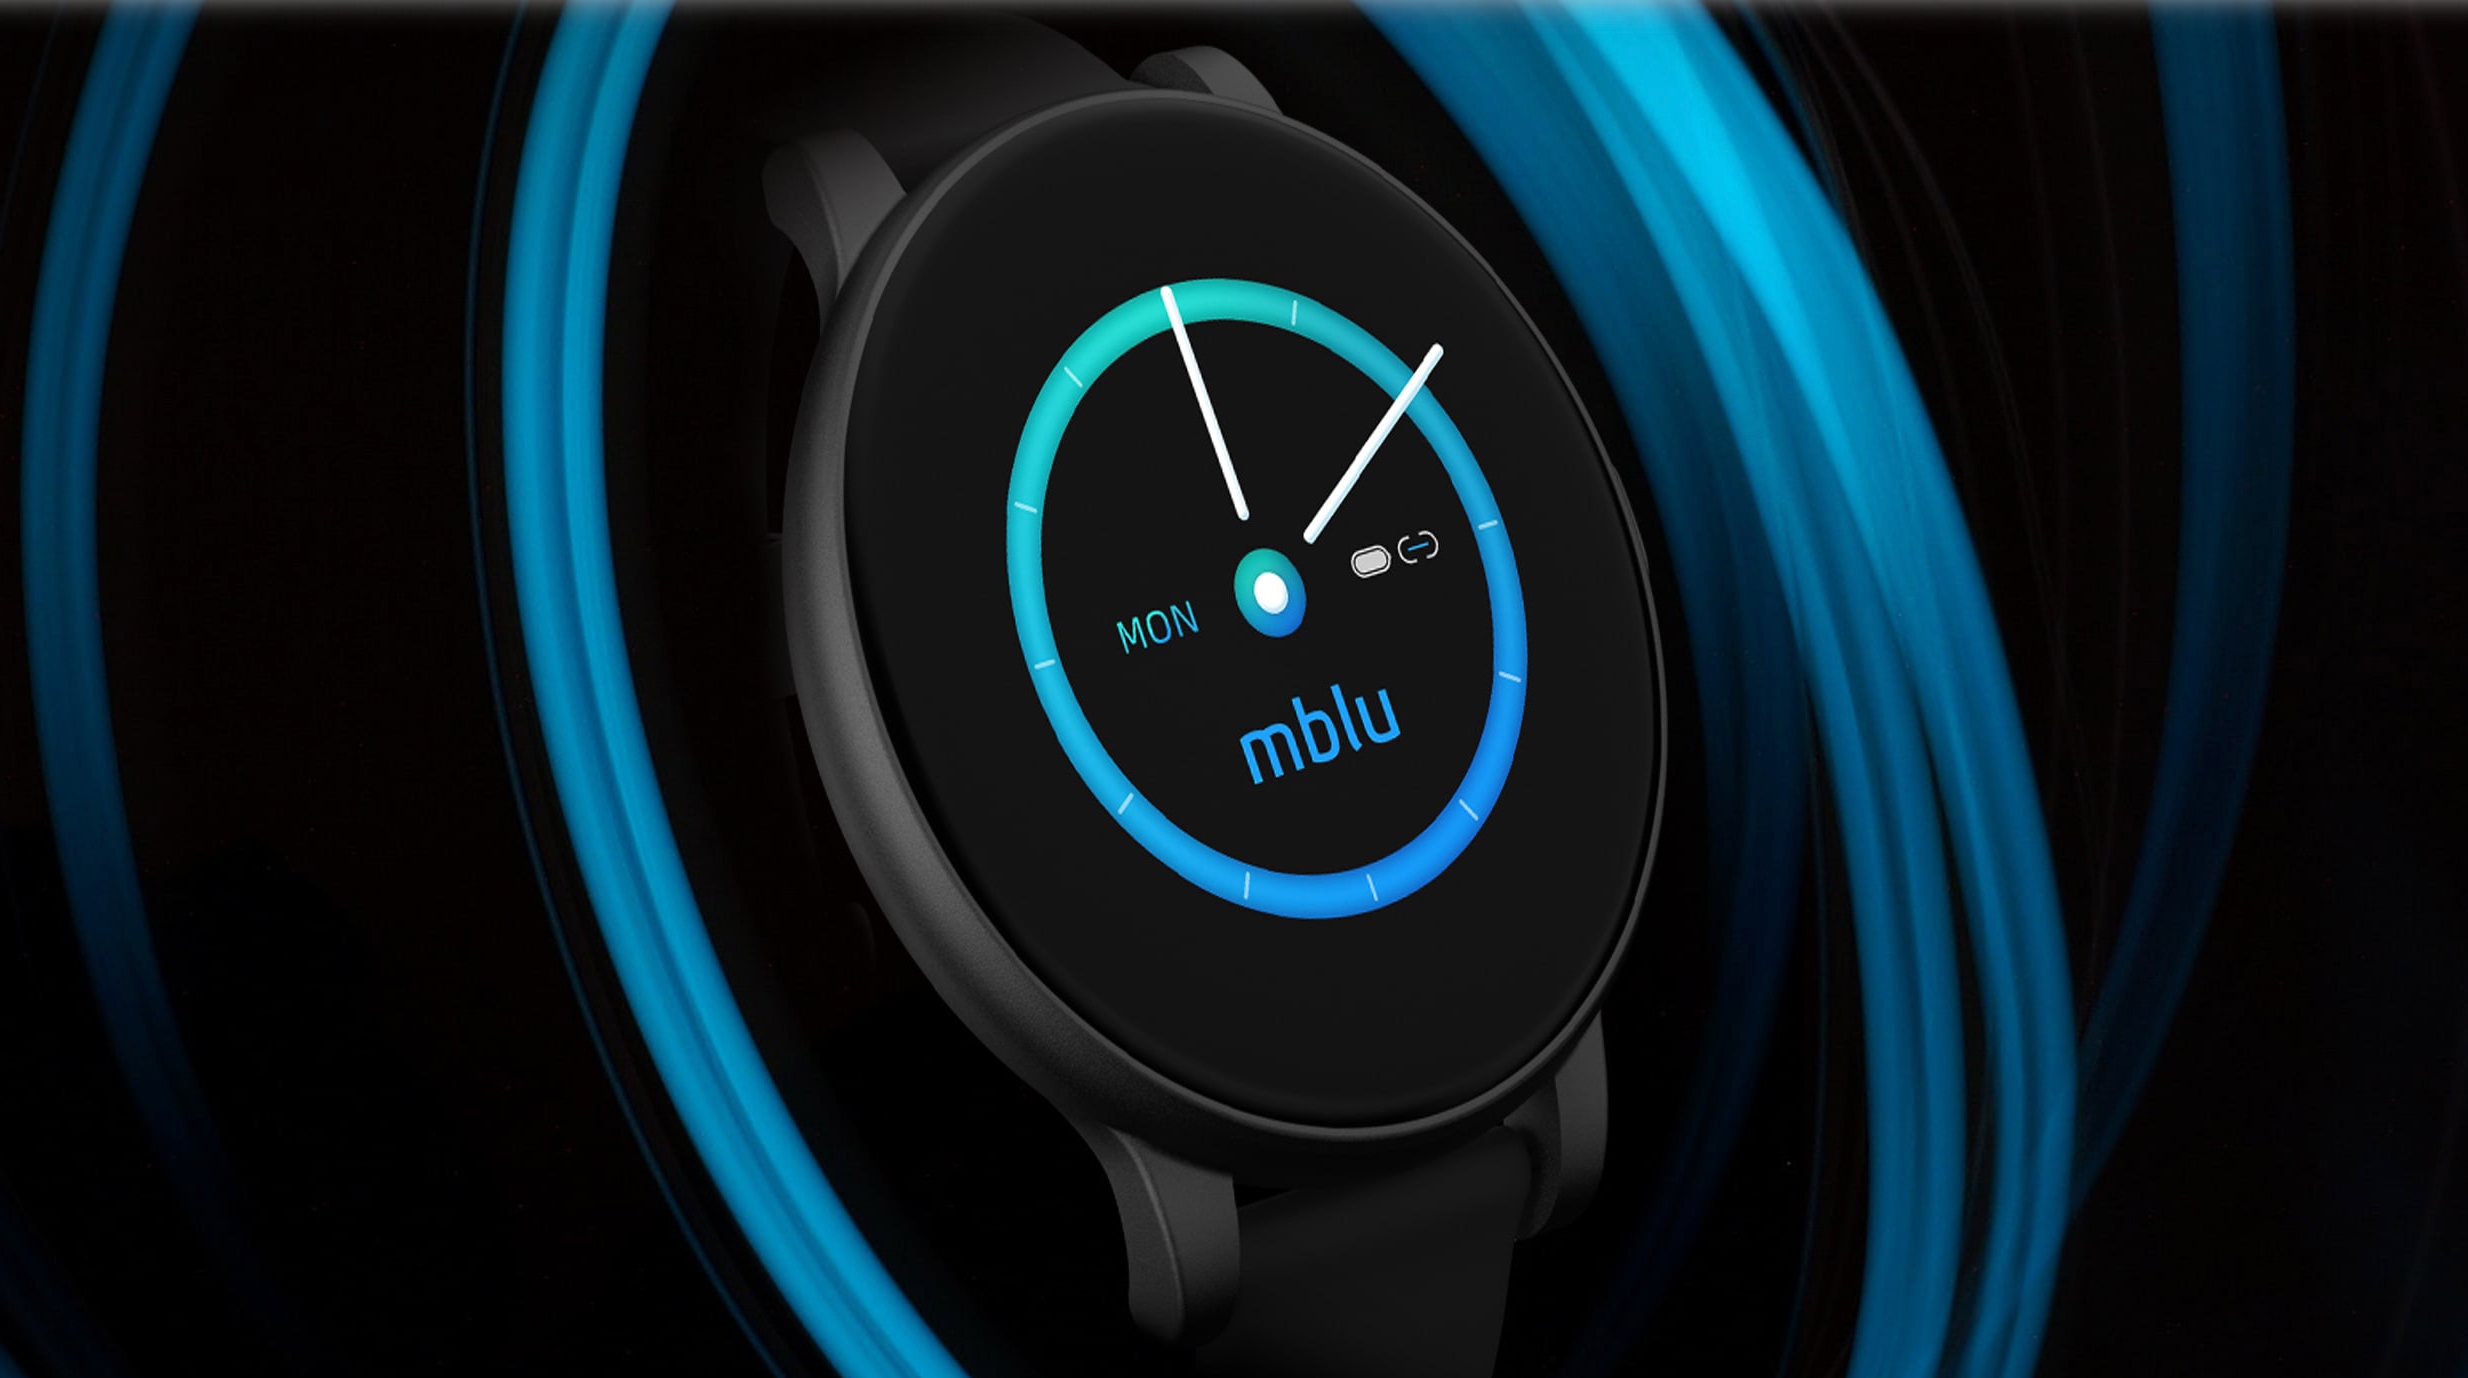 Meizu mBlu Smart Band: tracker fitness z okrągłym ekranem, ochrona IP68 i do 10 dni pracy na baterii za 39 dolarów